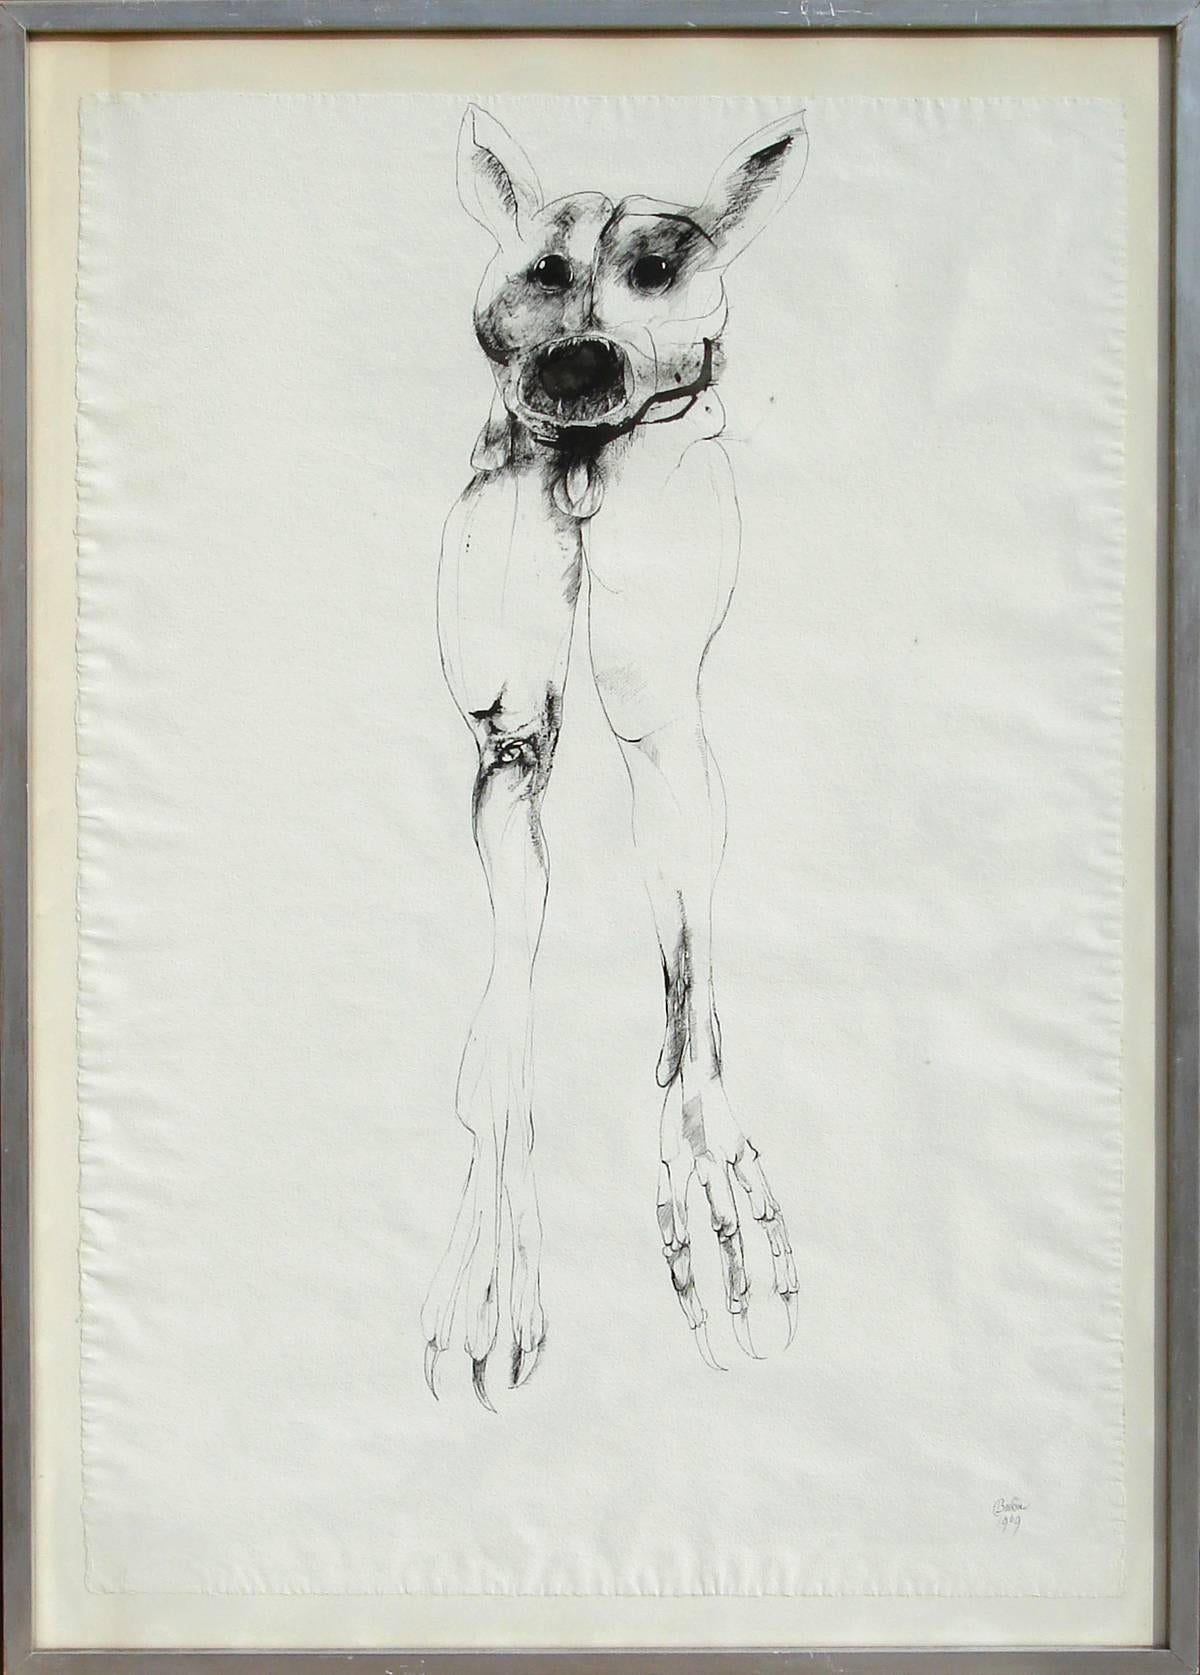 Künstler: Leonard Baskin, Amerikaner (1922 - 2000)
Titel: Groteske
Jahr: 1969
Medium: Tinte auf Papier, signiert 
Größe: 40 Zoll x 27,5 Zoll (101,6 cm x 69,85 cm)
Rahmengröße: 45 x 32 Zoll